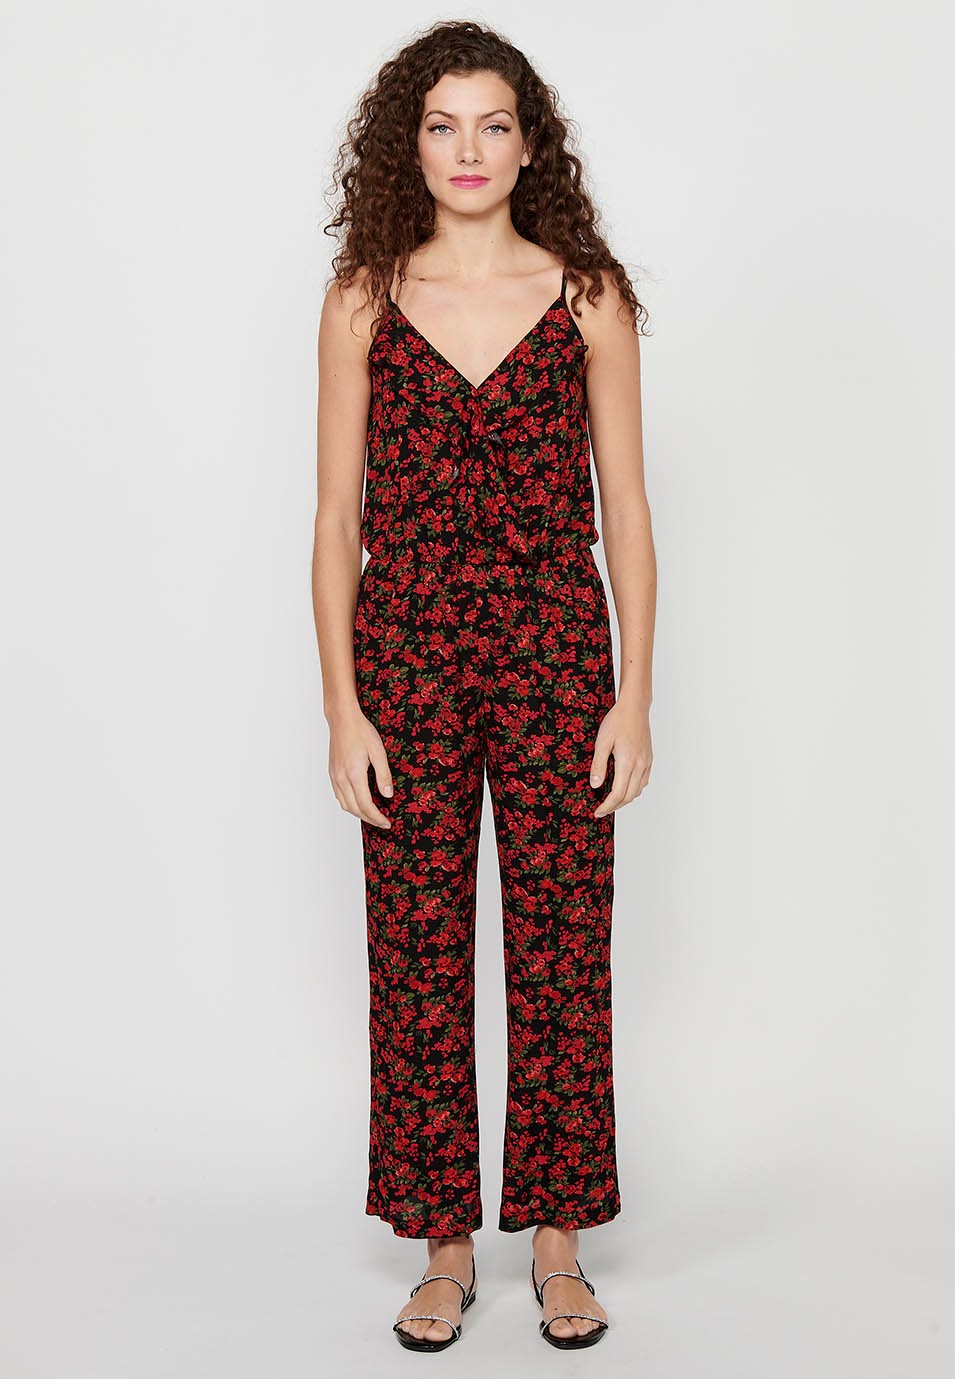 Pantalon habillé long à bretelles réglables avec taille caoutchoutée et imprimé floral rouge pour Femme 3